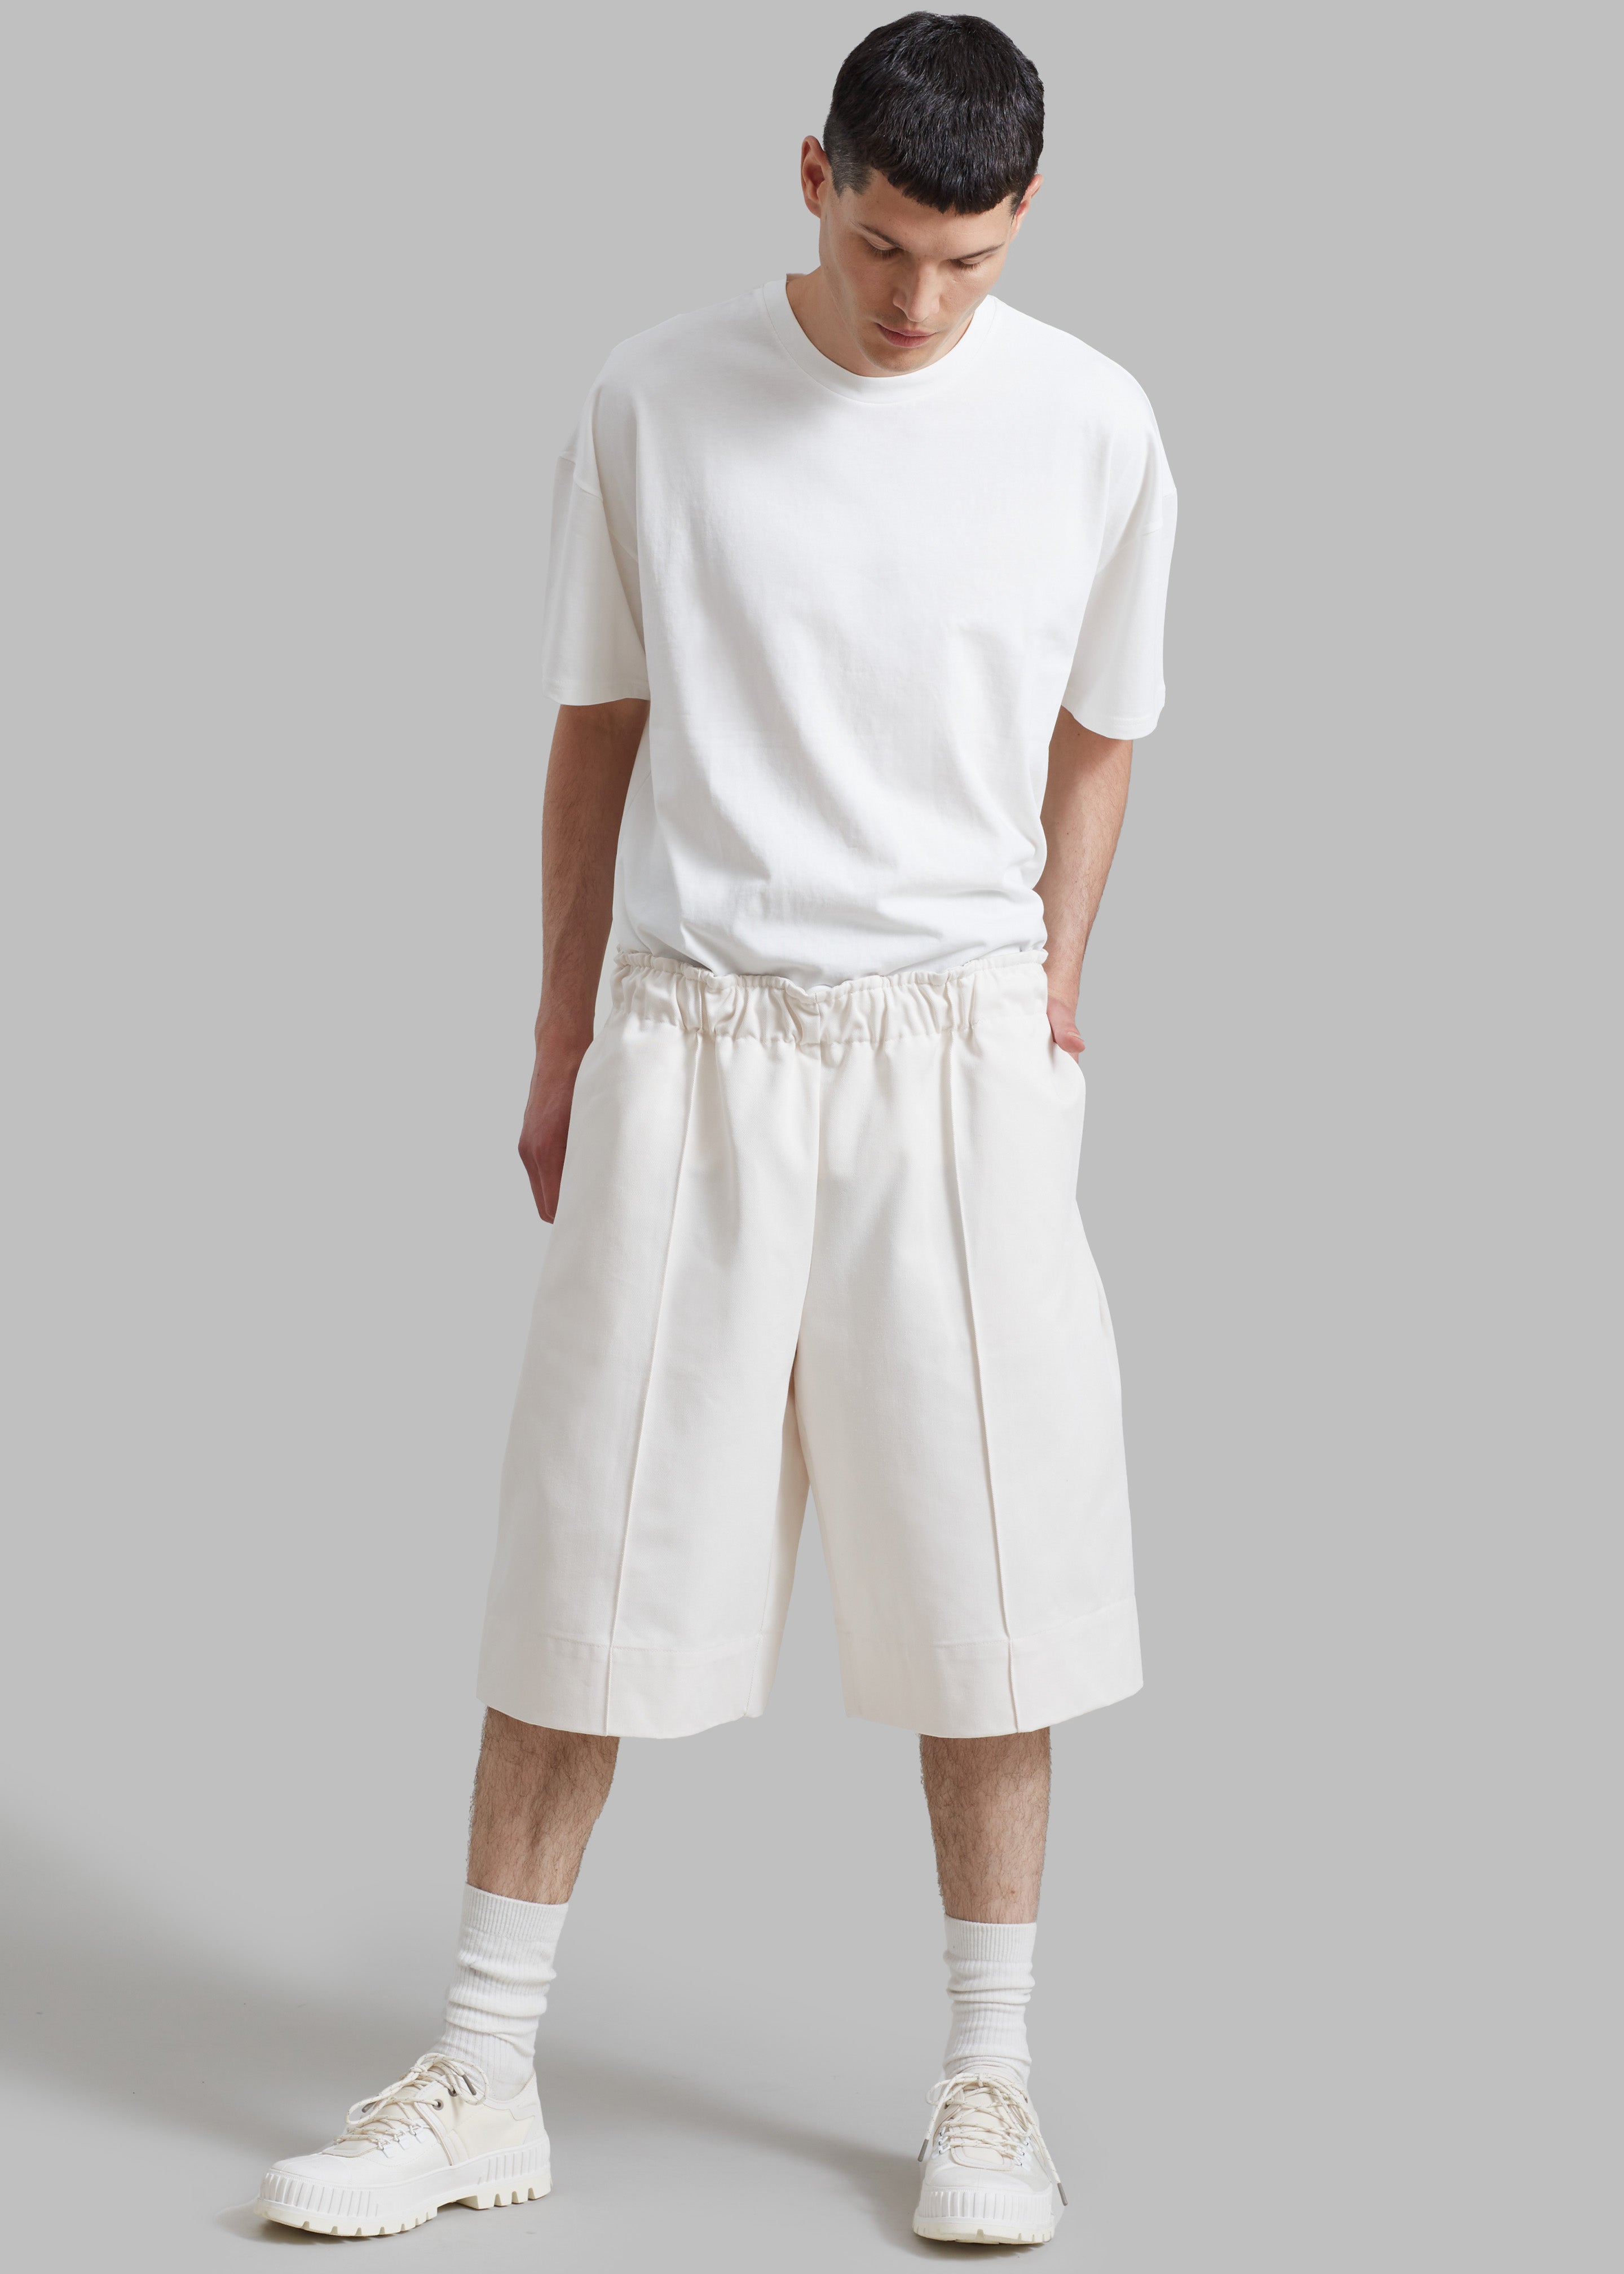 Adan Bermuda Shorts - Cream - 5